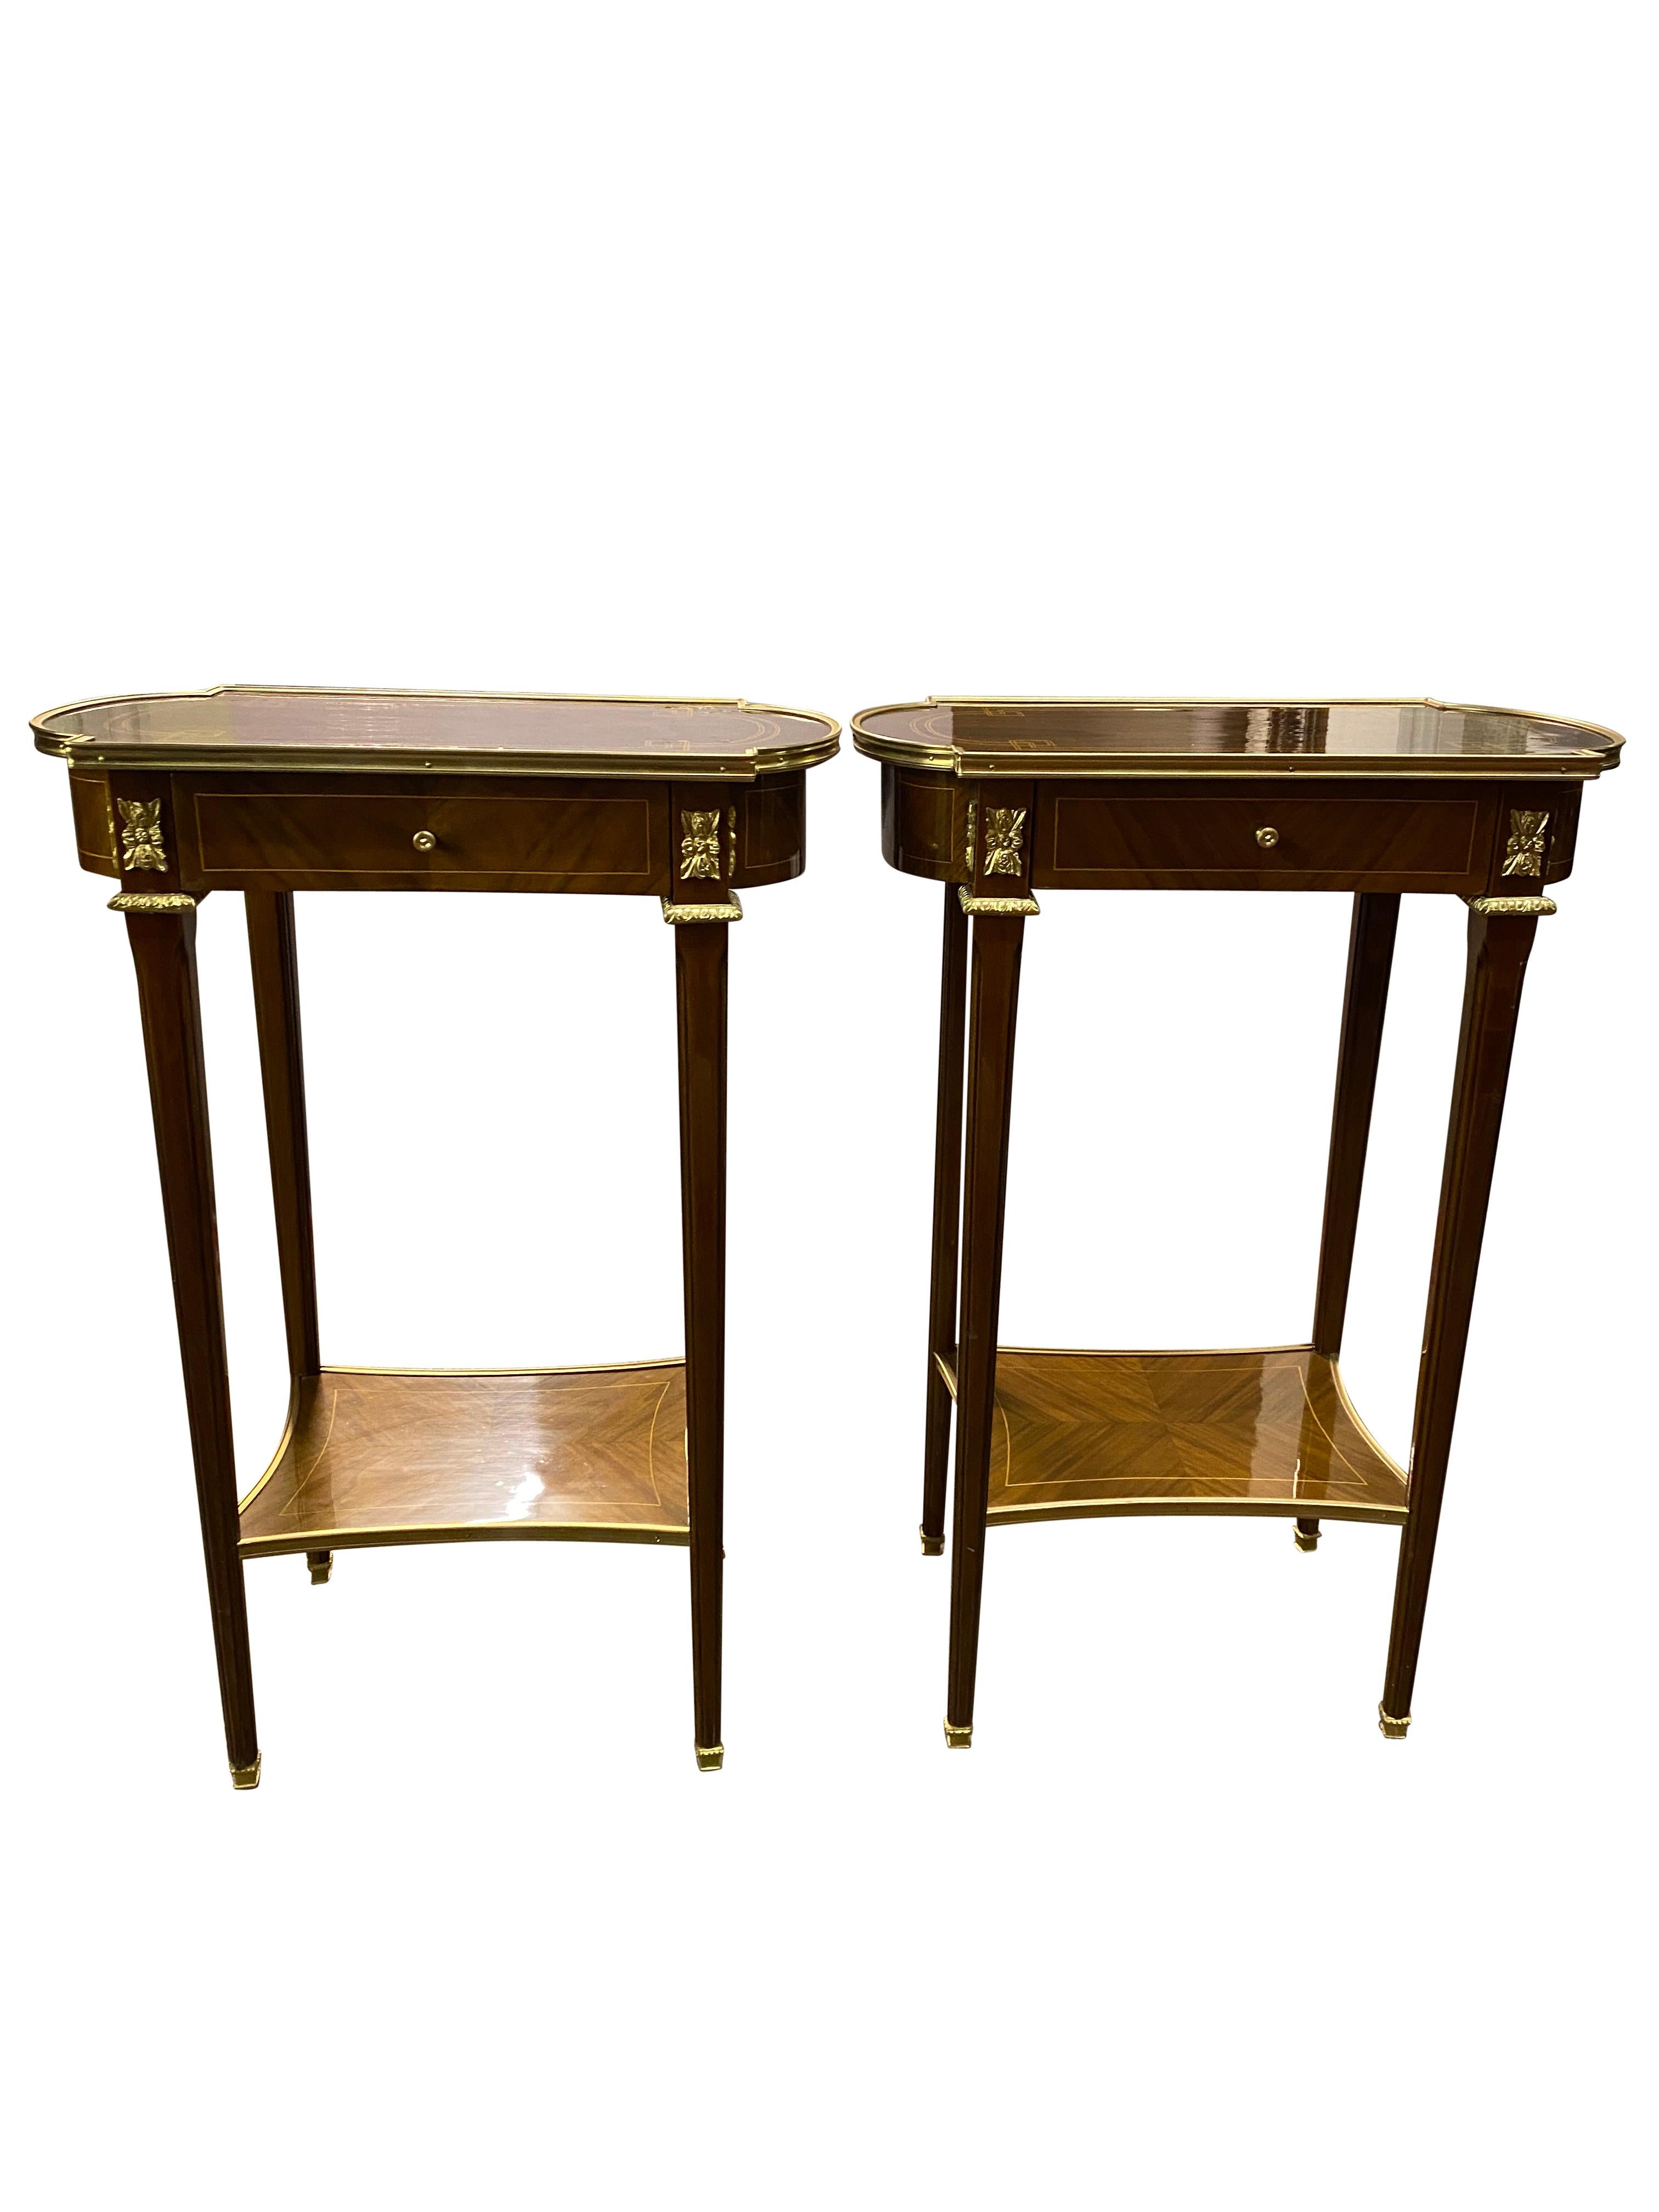 Une superbe paire de tables d'appoint de style Regency anglais du 20e siècle. Un design magnifique et élégant, parfait pour les intérieurs modernes.

Mesures (cm)
Hauteur 71
Largeur 50
Profondeur 31.